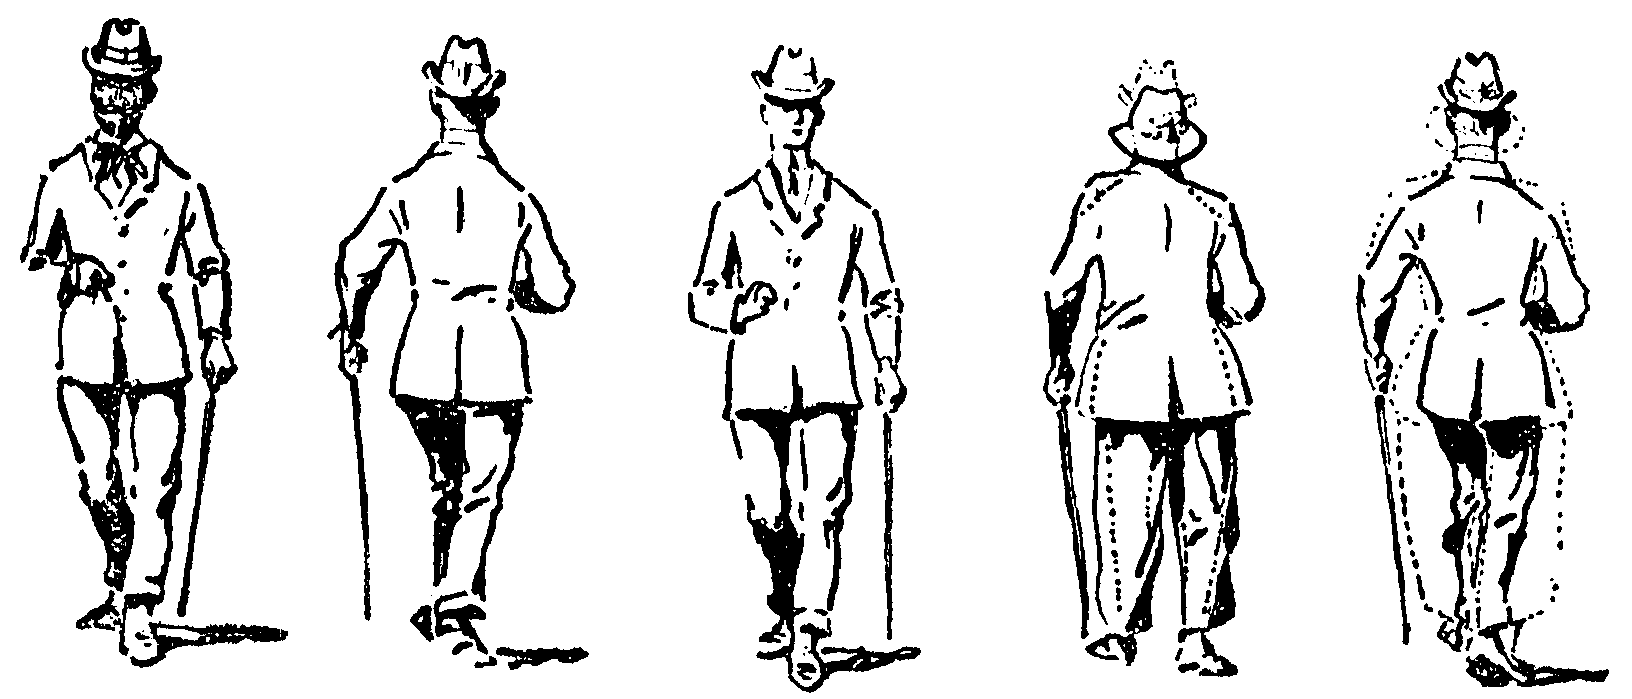 Walking Man Drawing - Cliparts.co